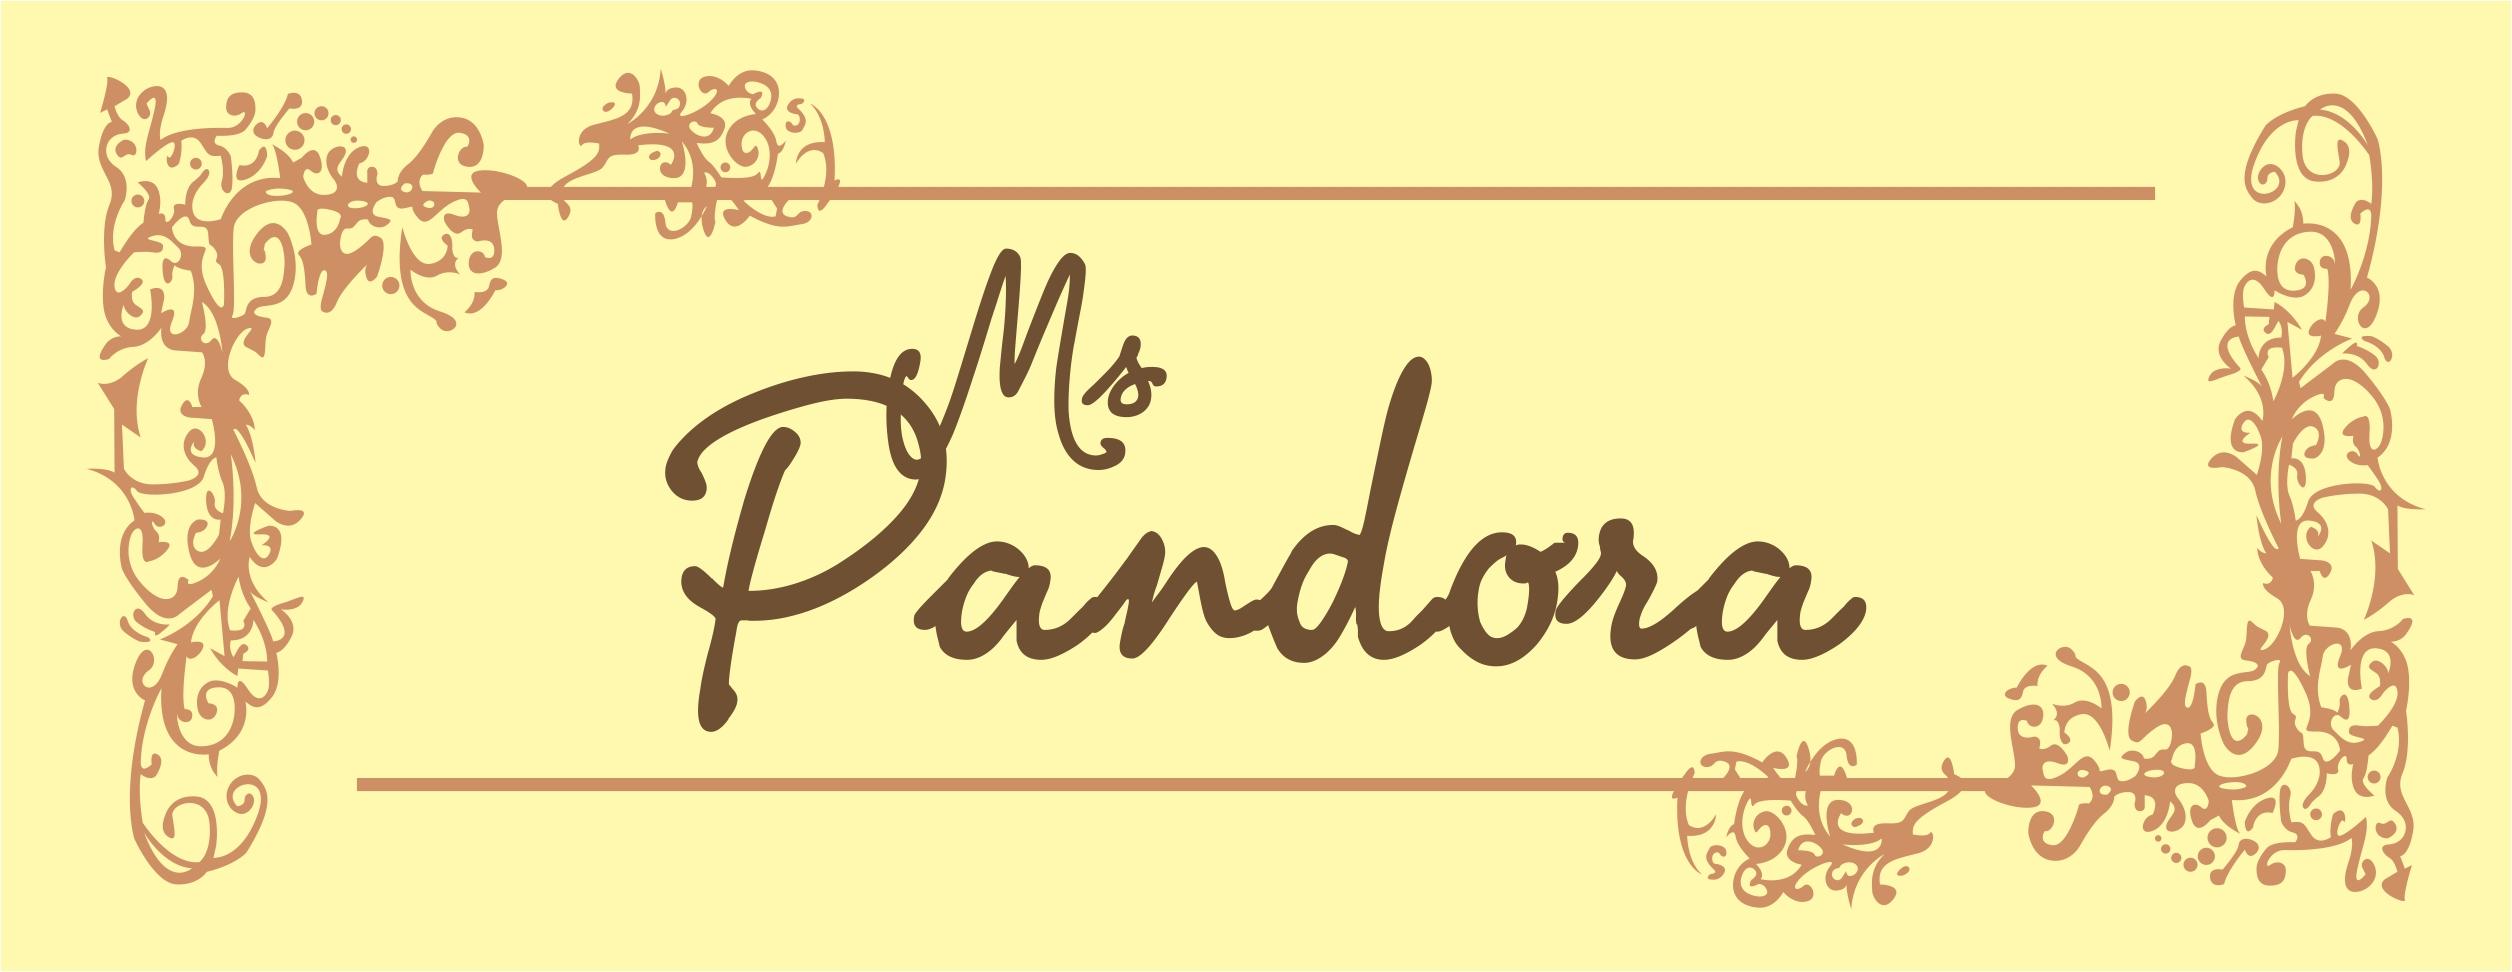 Moda Feminina MS Pandora logo